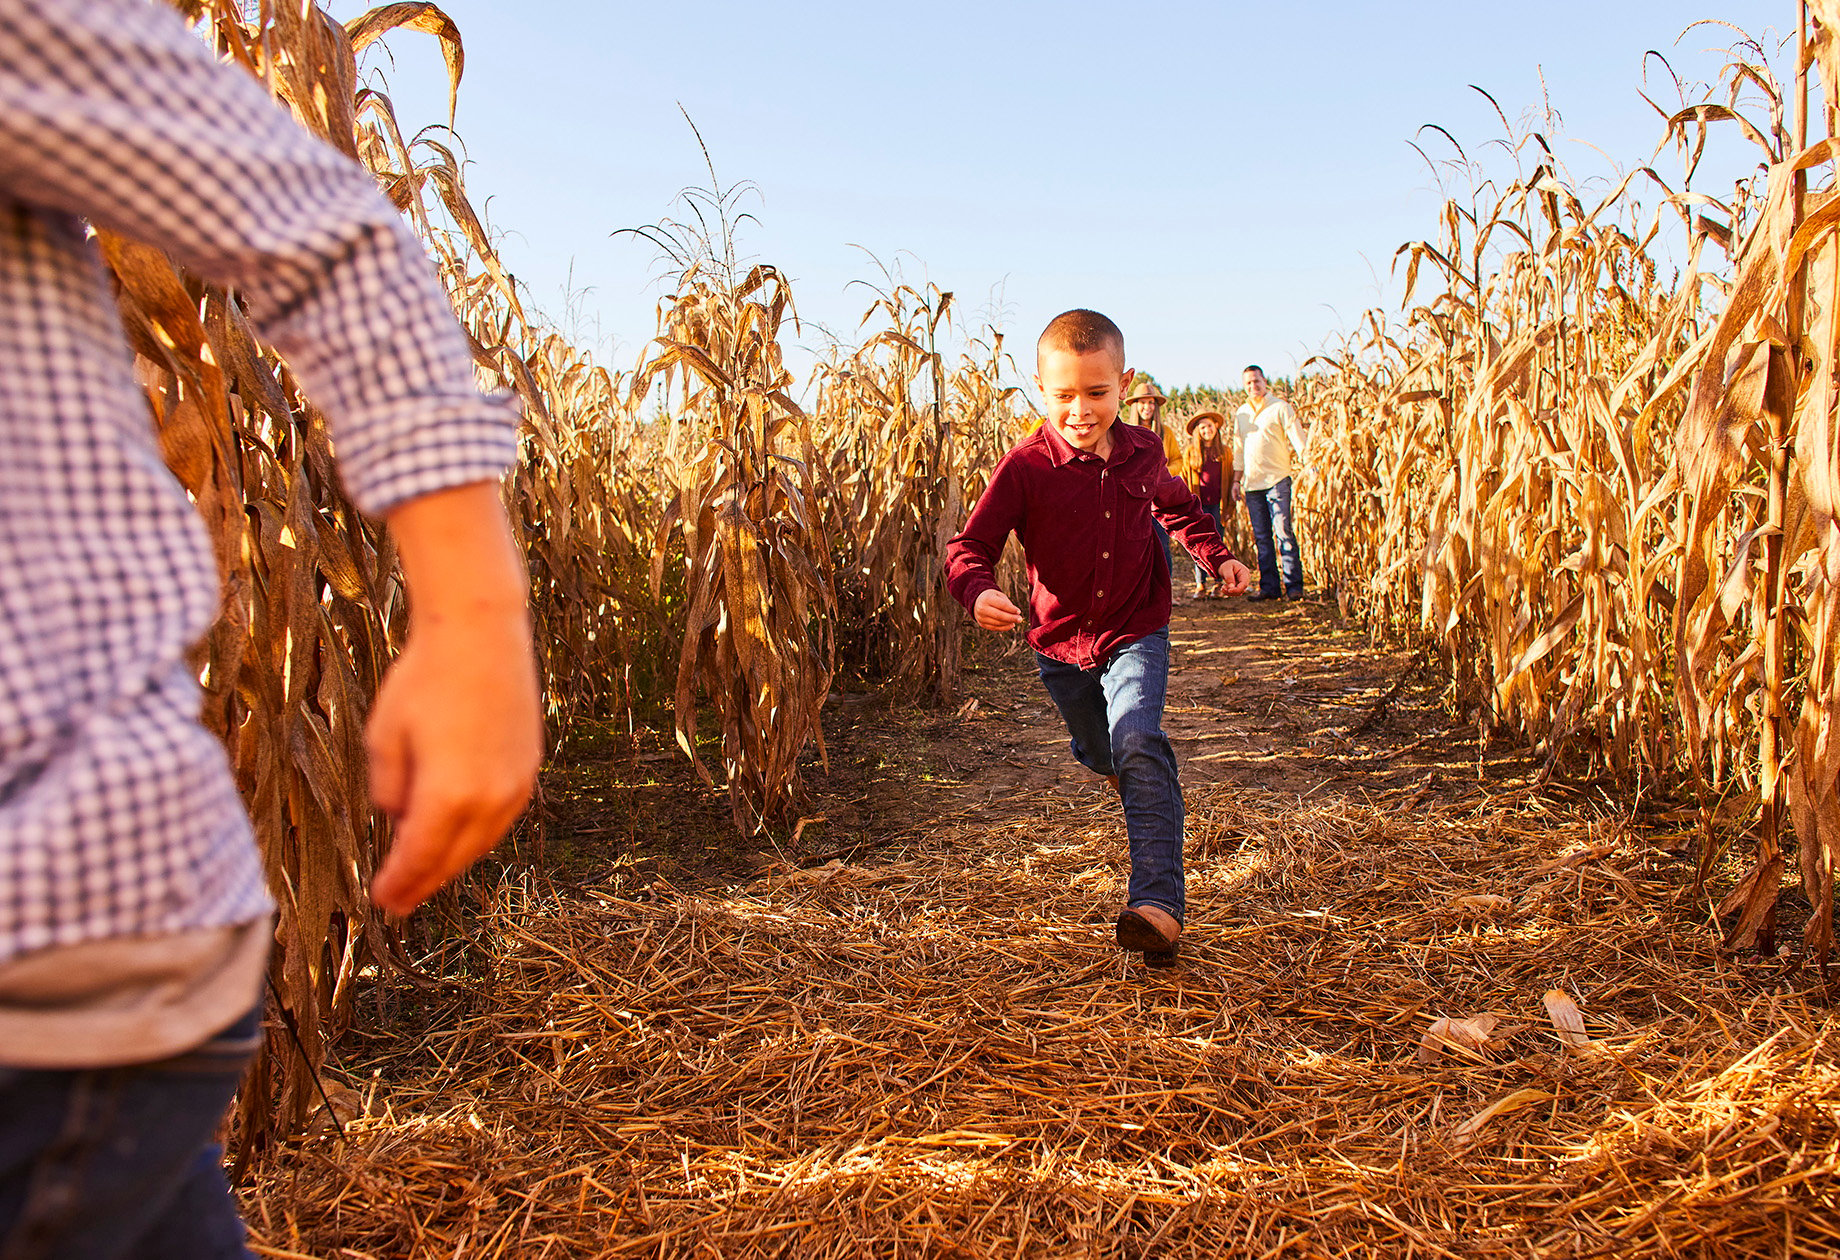 Young boy runs through corn maze shot by Tyler Darden for Virginia Living magazine.